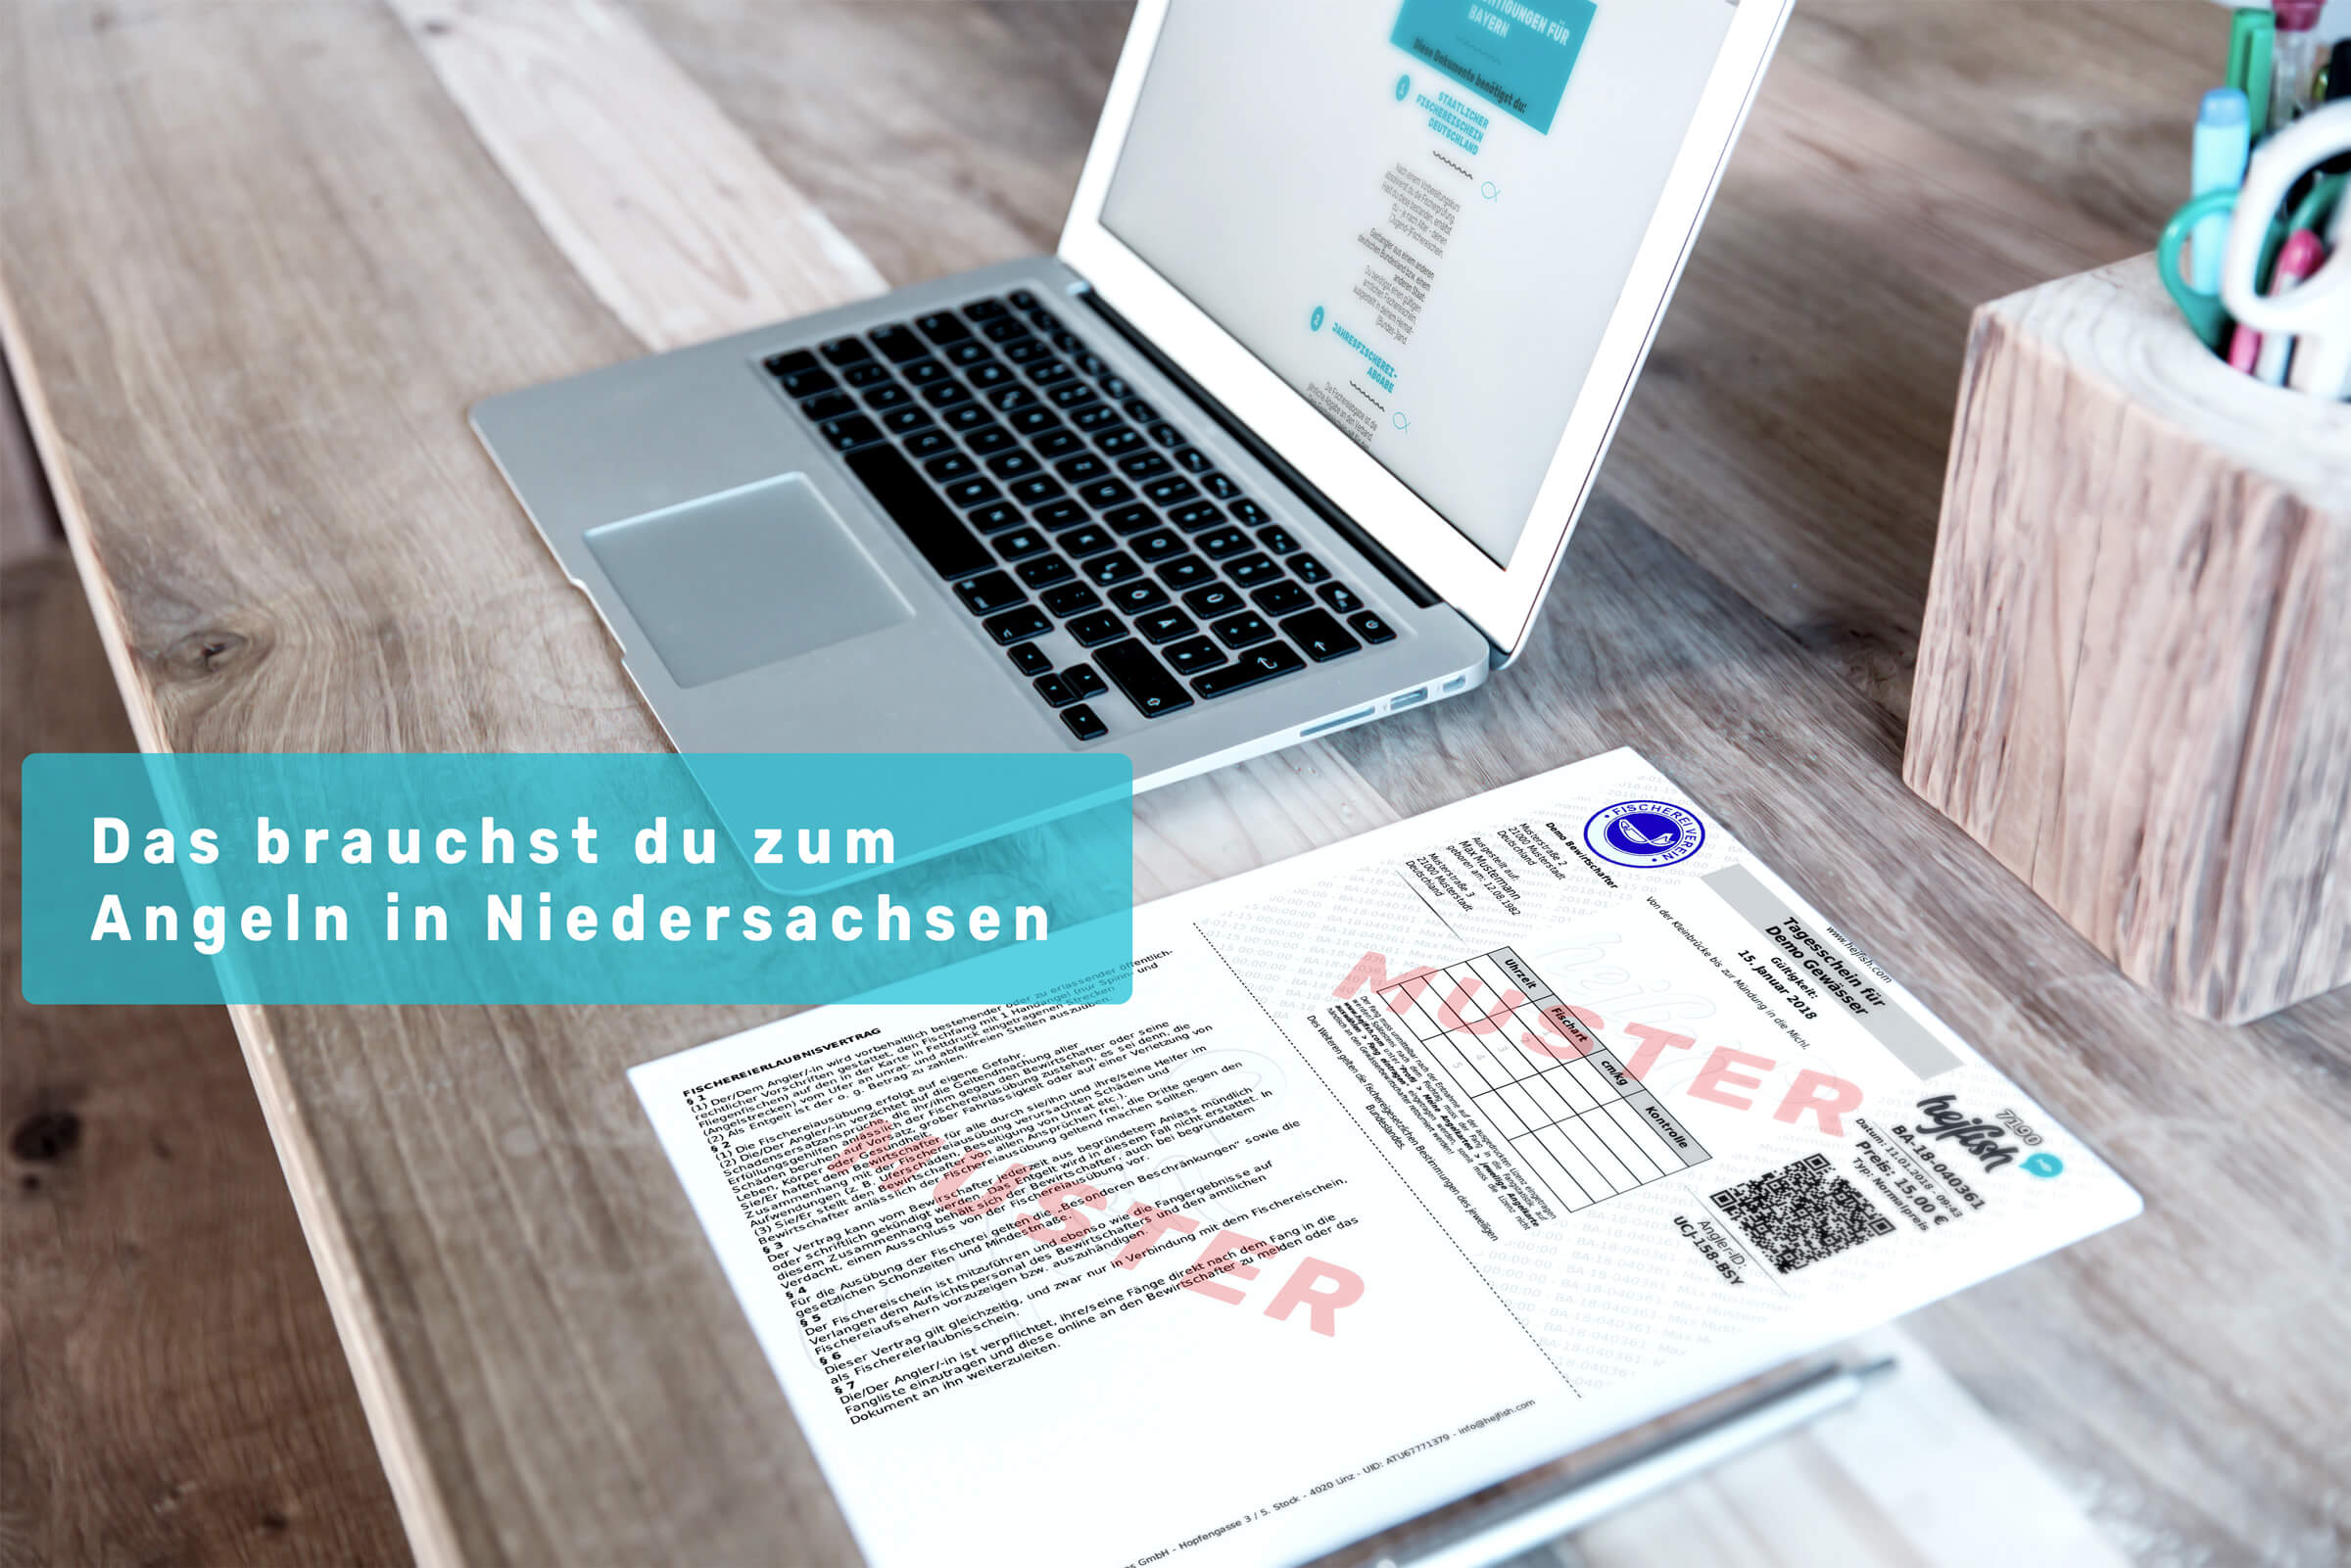 Laptop und Schreibtisch mit Schriftzug " Angelberechtigungen Niedersachsen"